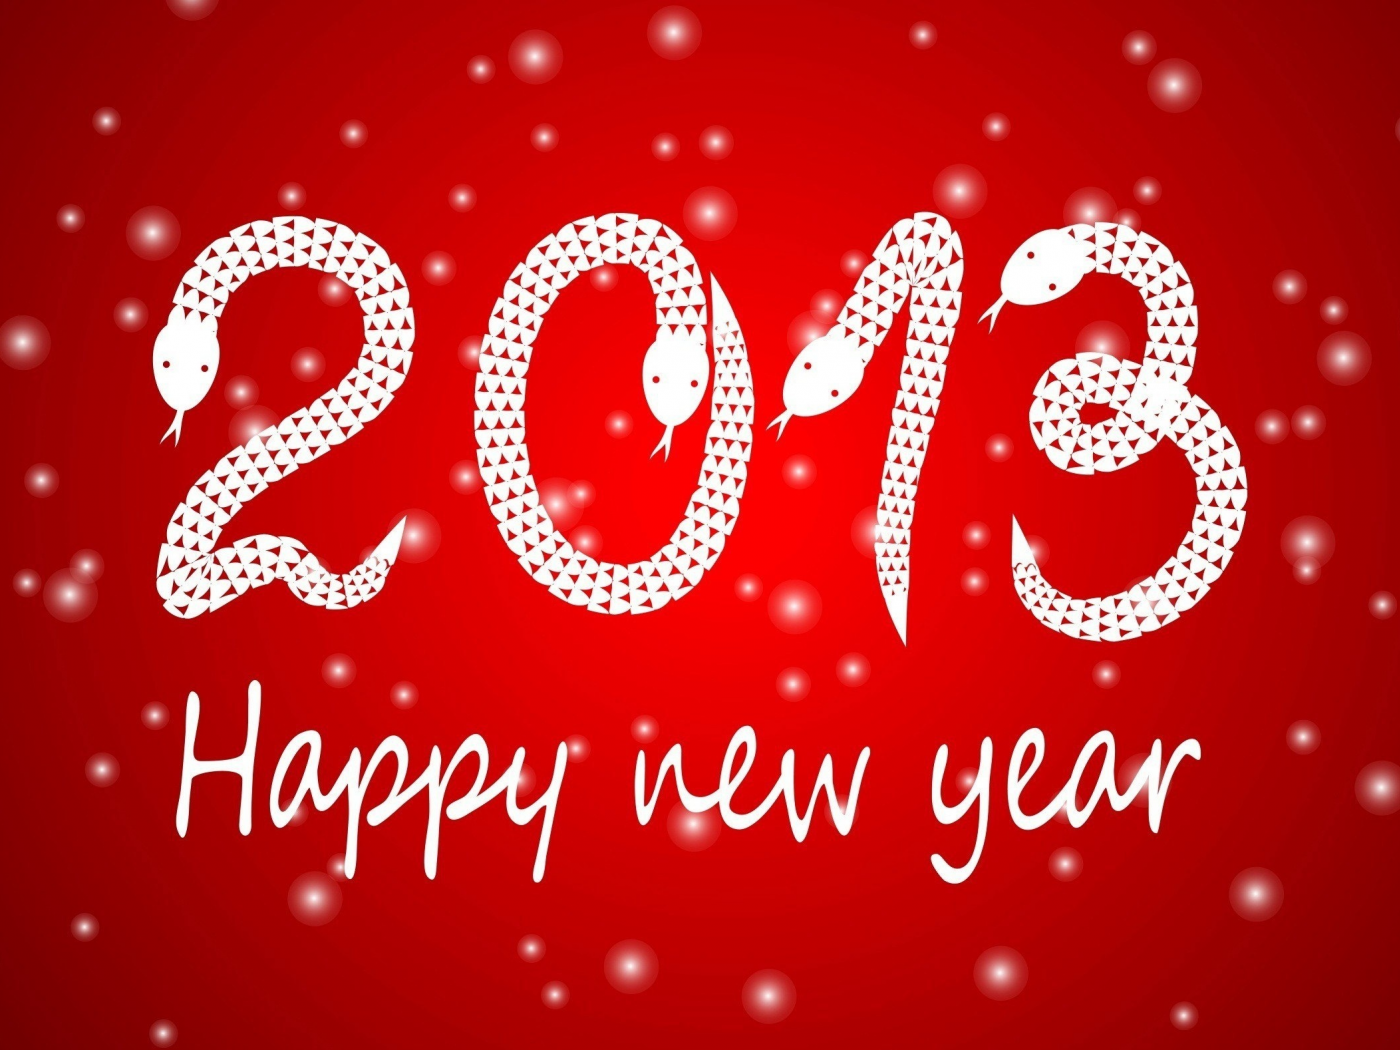 год змеи, Новый 2013 год, happy new year